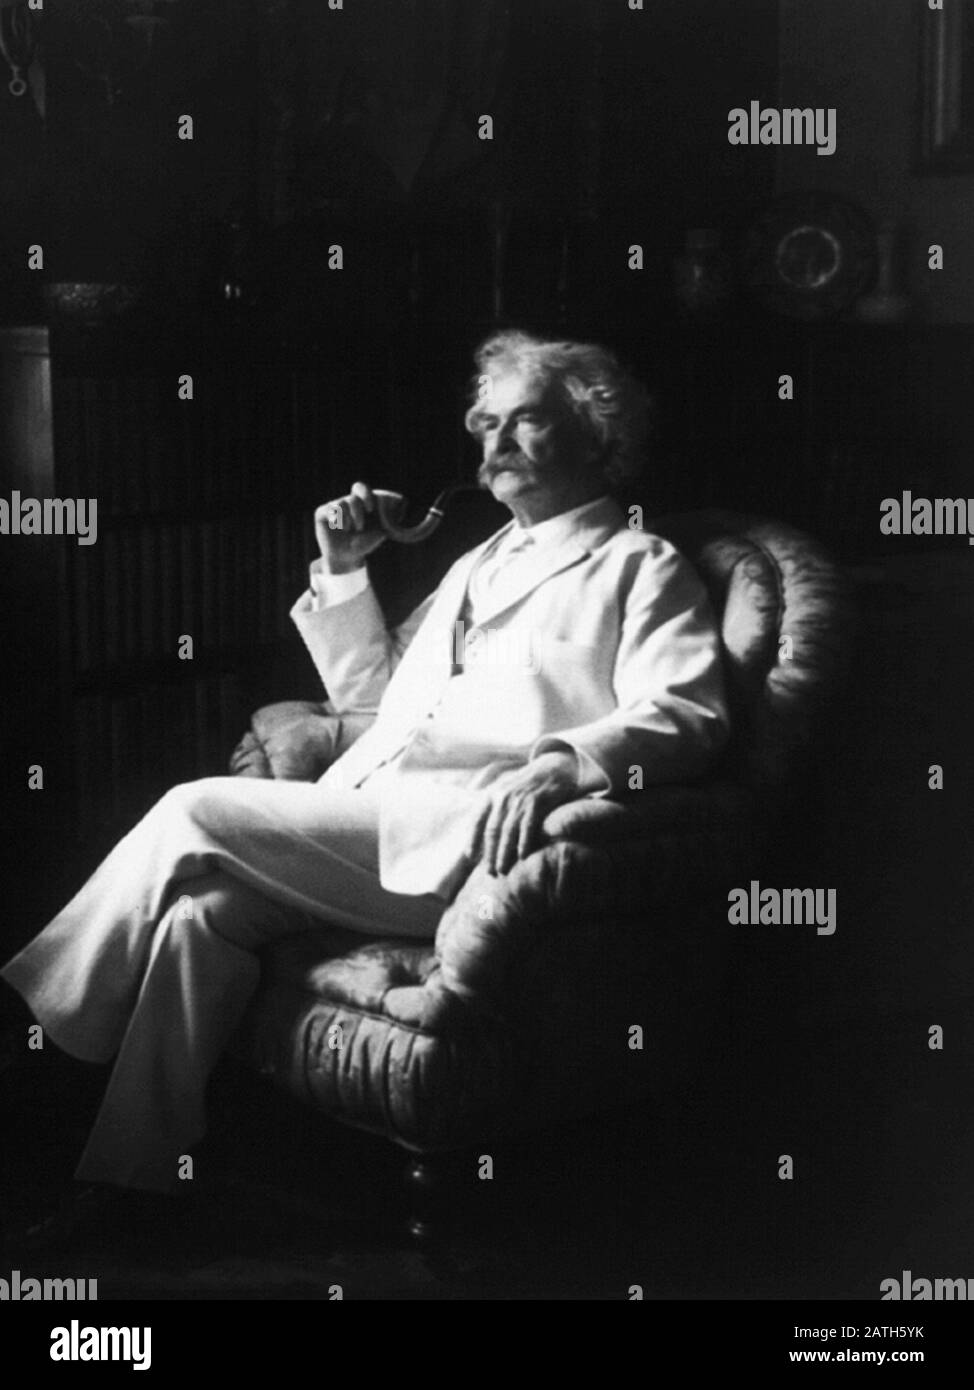 Photo de portrait vintage de l'écrivain et humoriste américain Samuel Langhorne Clemens (1835 – 1910), mieux connu par son nom de plume de Mark Twain. Photo vers 1907 par Underwood & Underwood. Banque D'Images